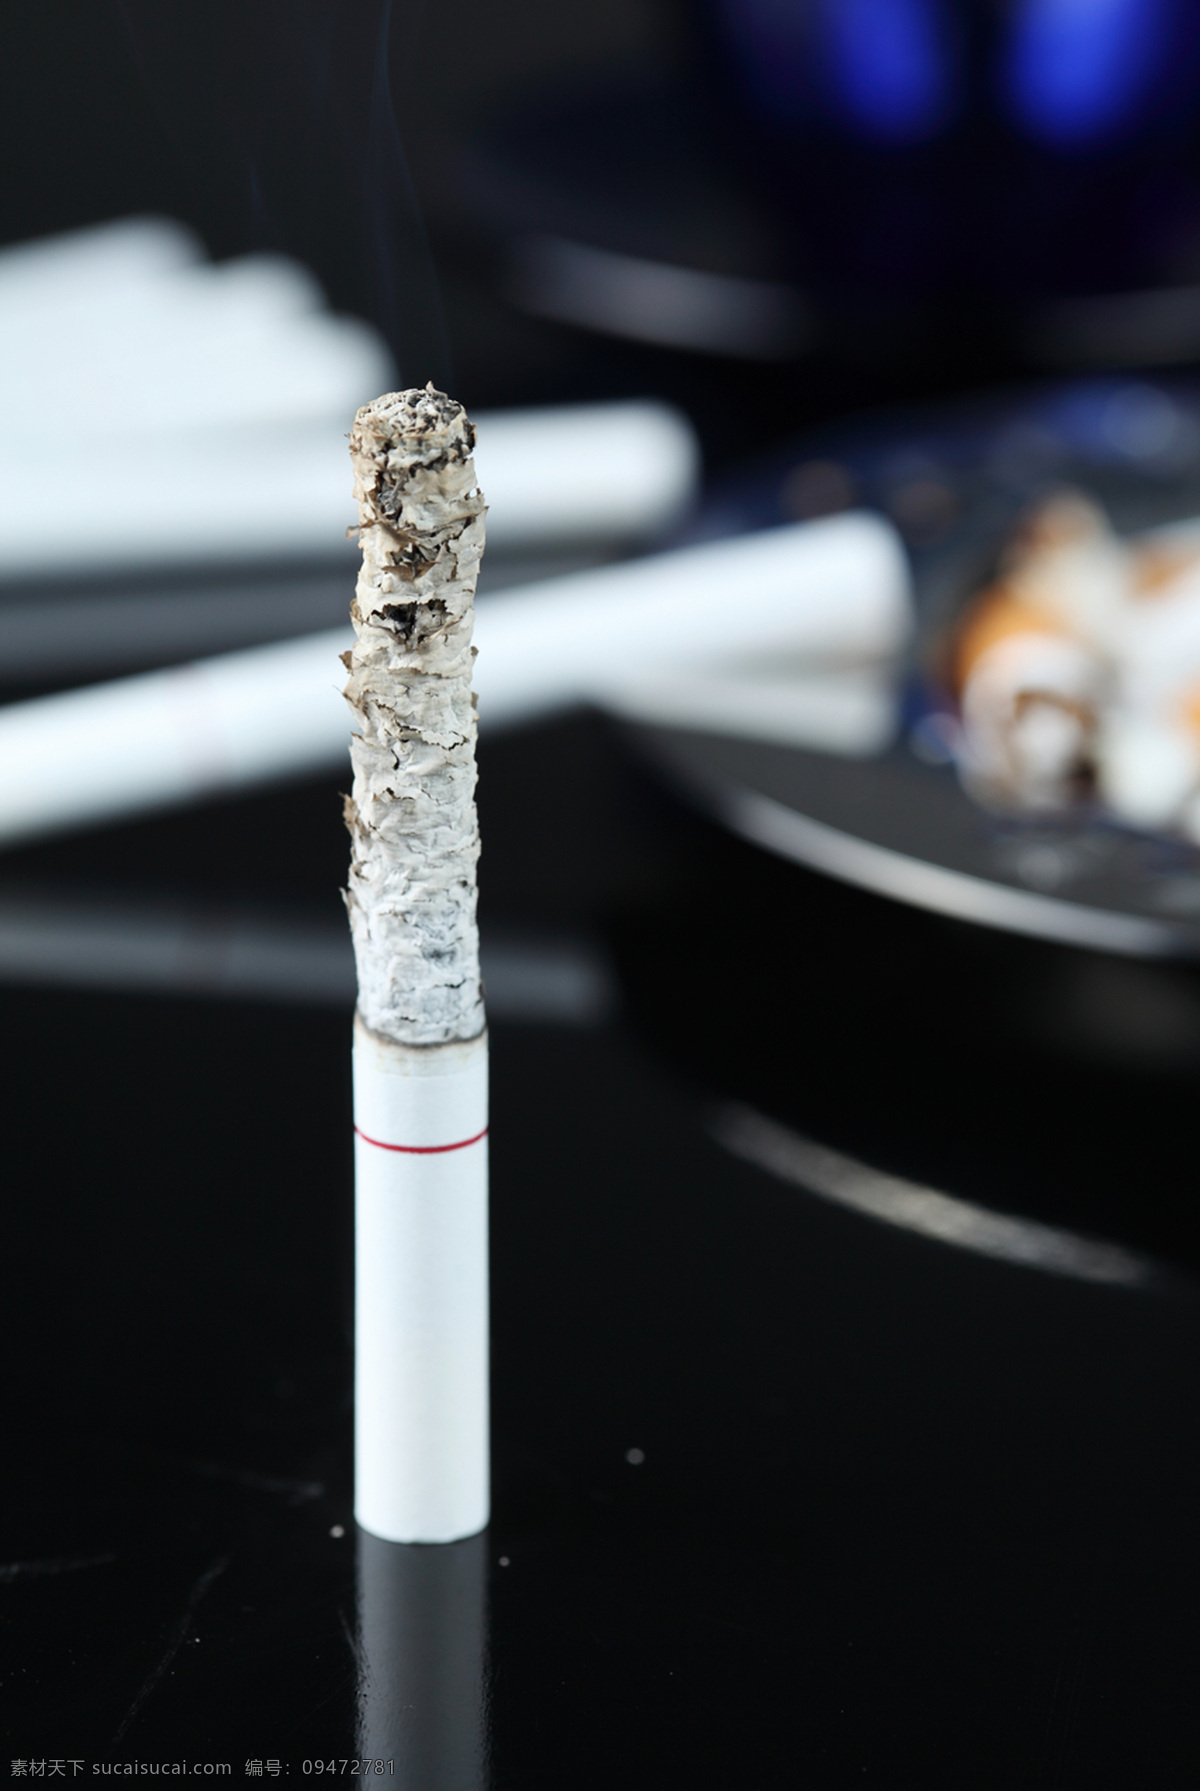 烟灰 烟蒂 烟头 香烟 烟灰缸 烟草 禁烟广告 危害健康 有害健康 日常用品 生活素材 生活百科